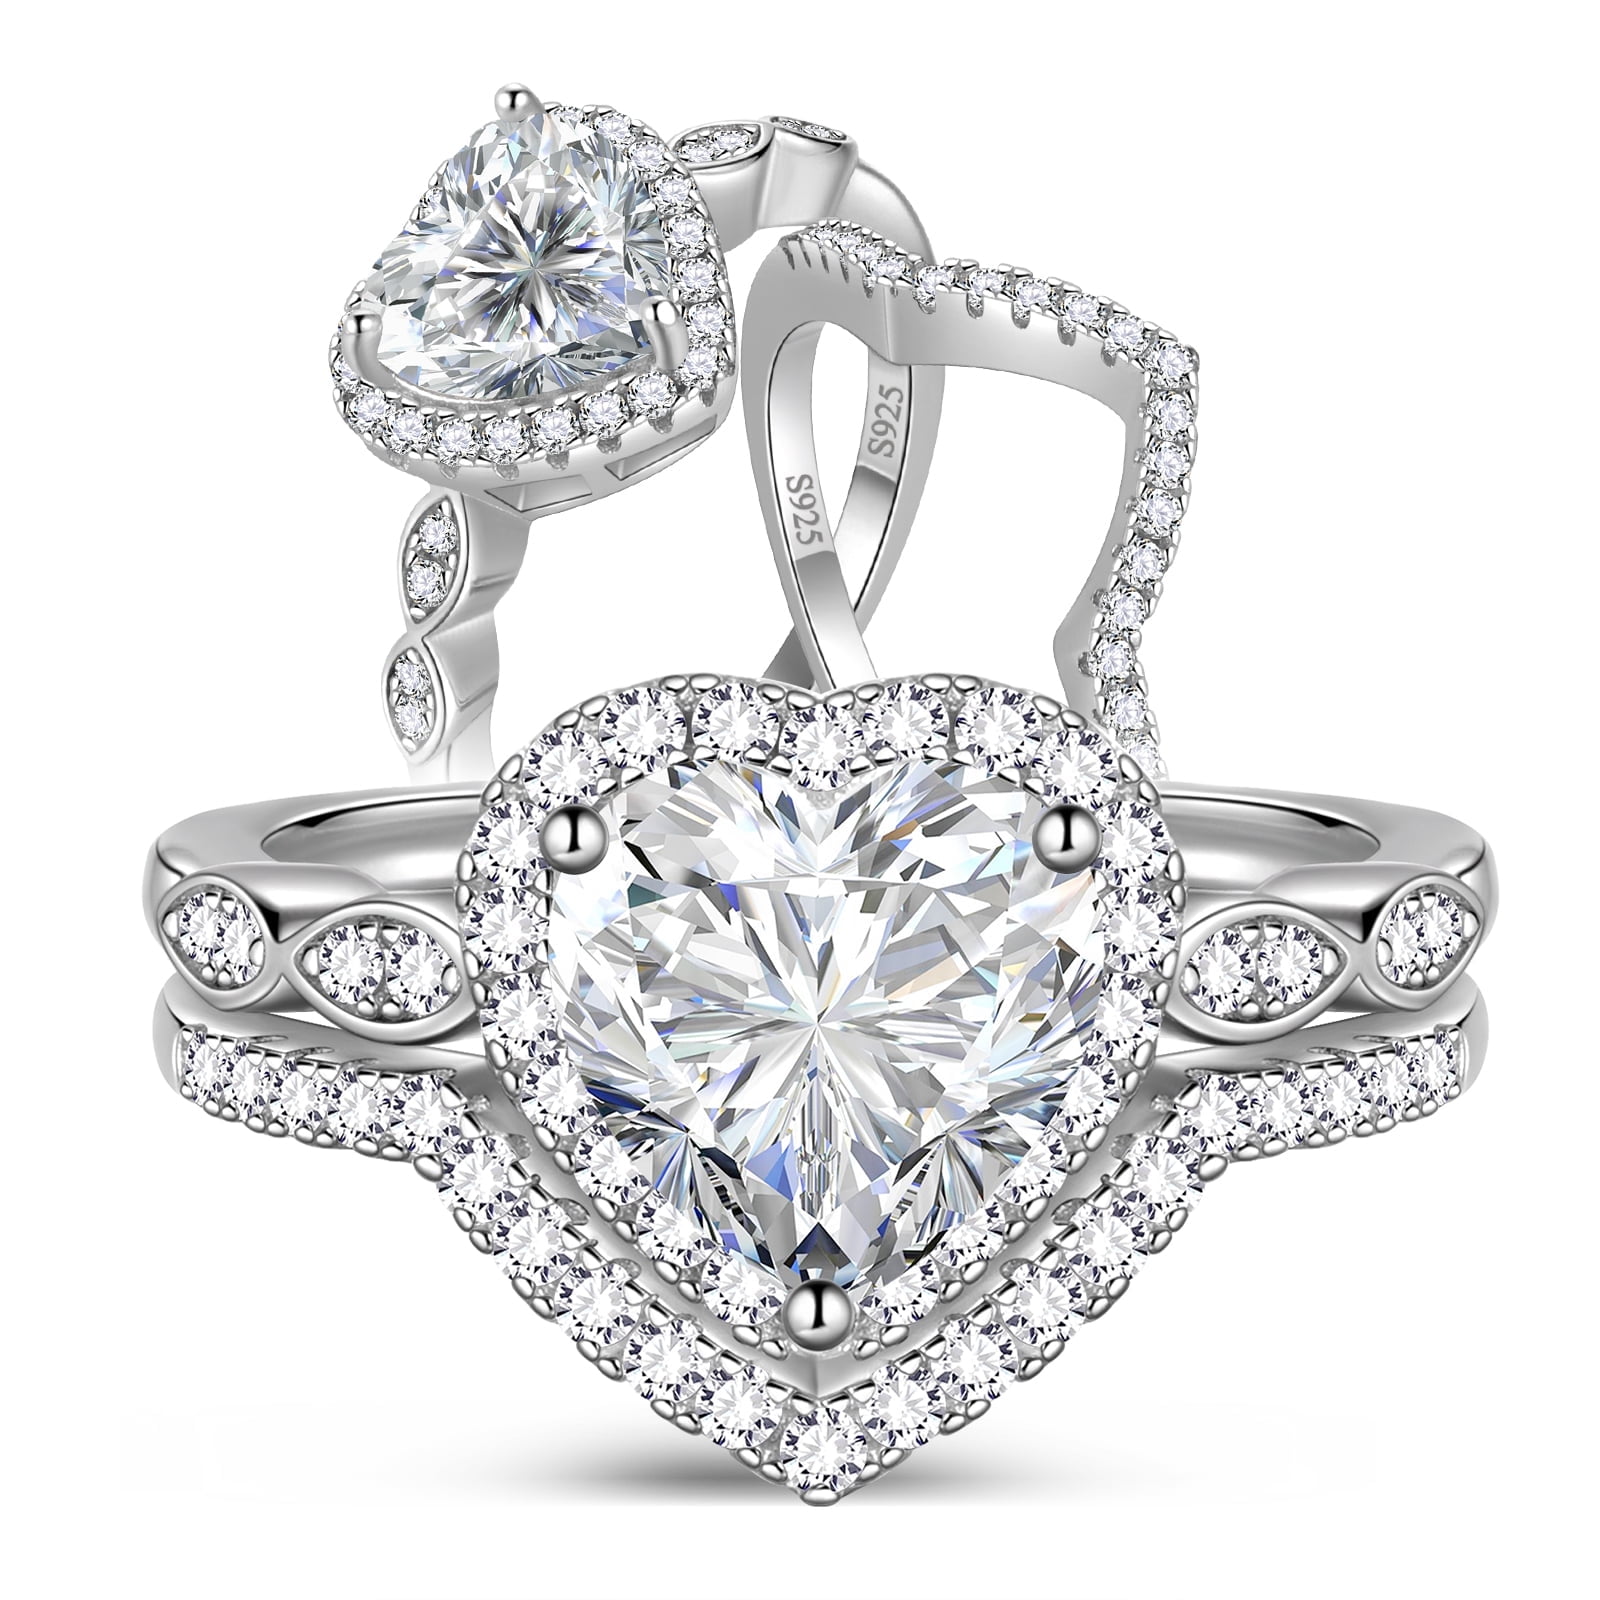 925 Sterling silver heart claddagh rings friendship jewelry love open rings  for women friends - Hunza Bazar